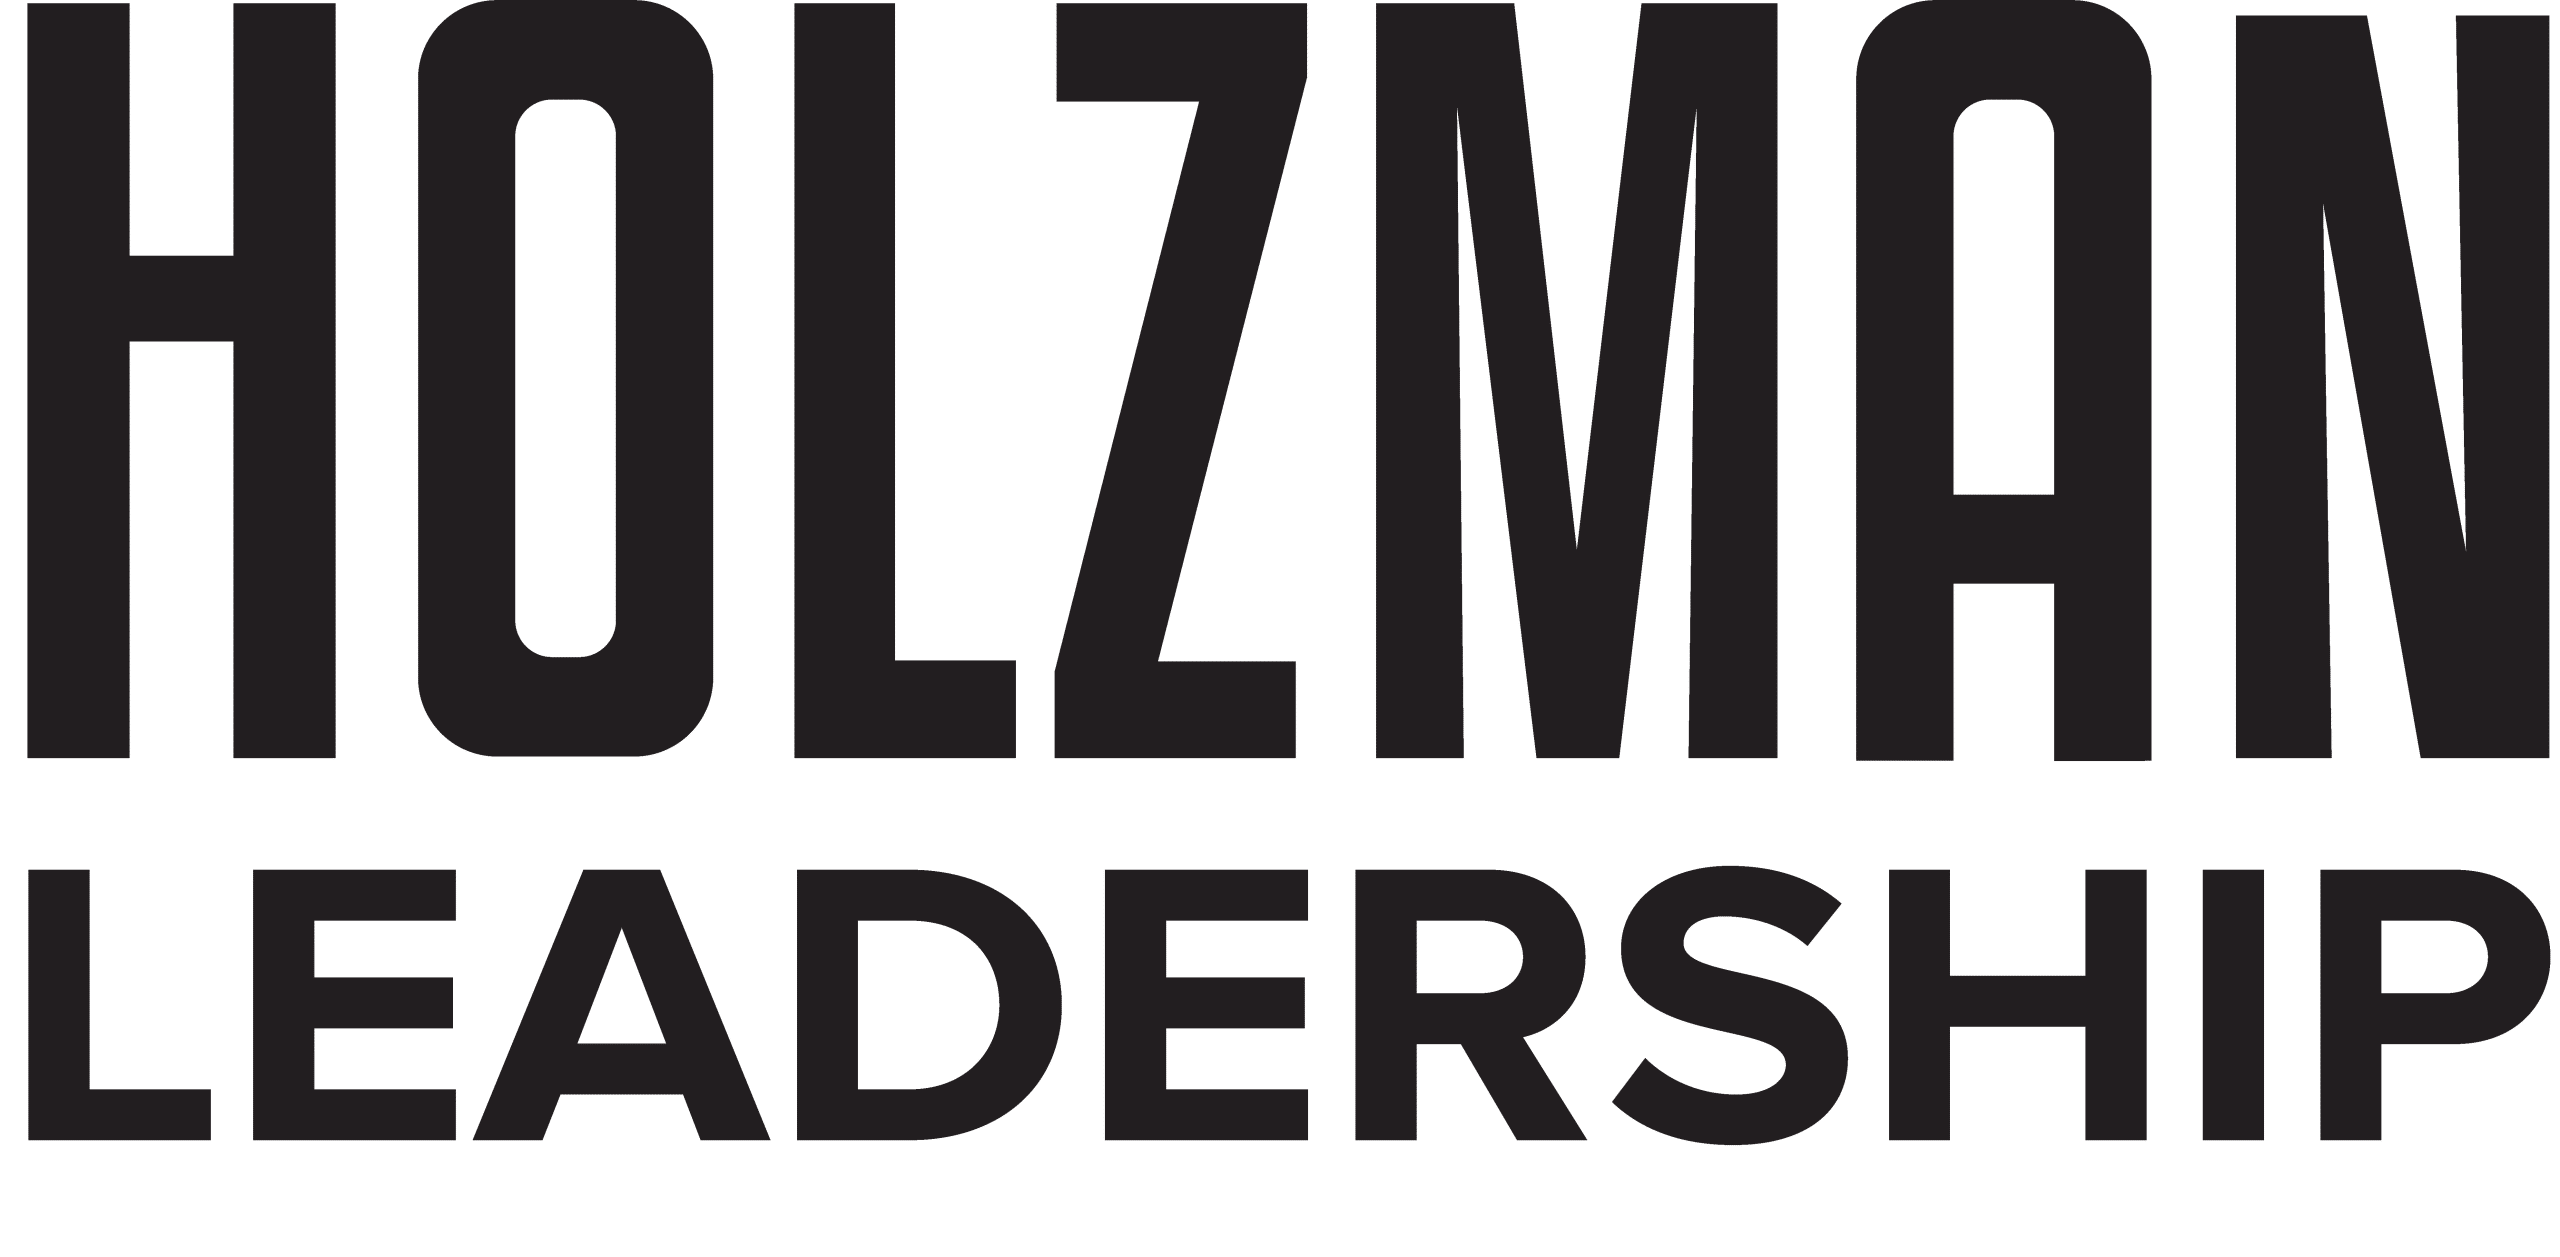 Holzman Leadership